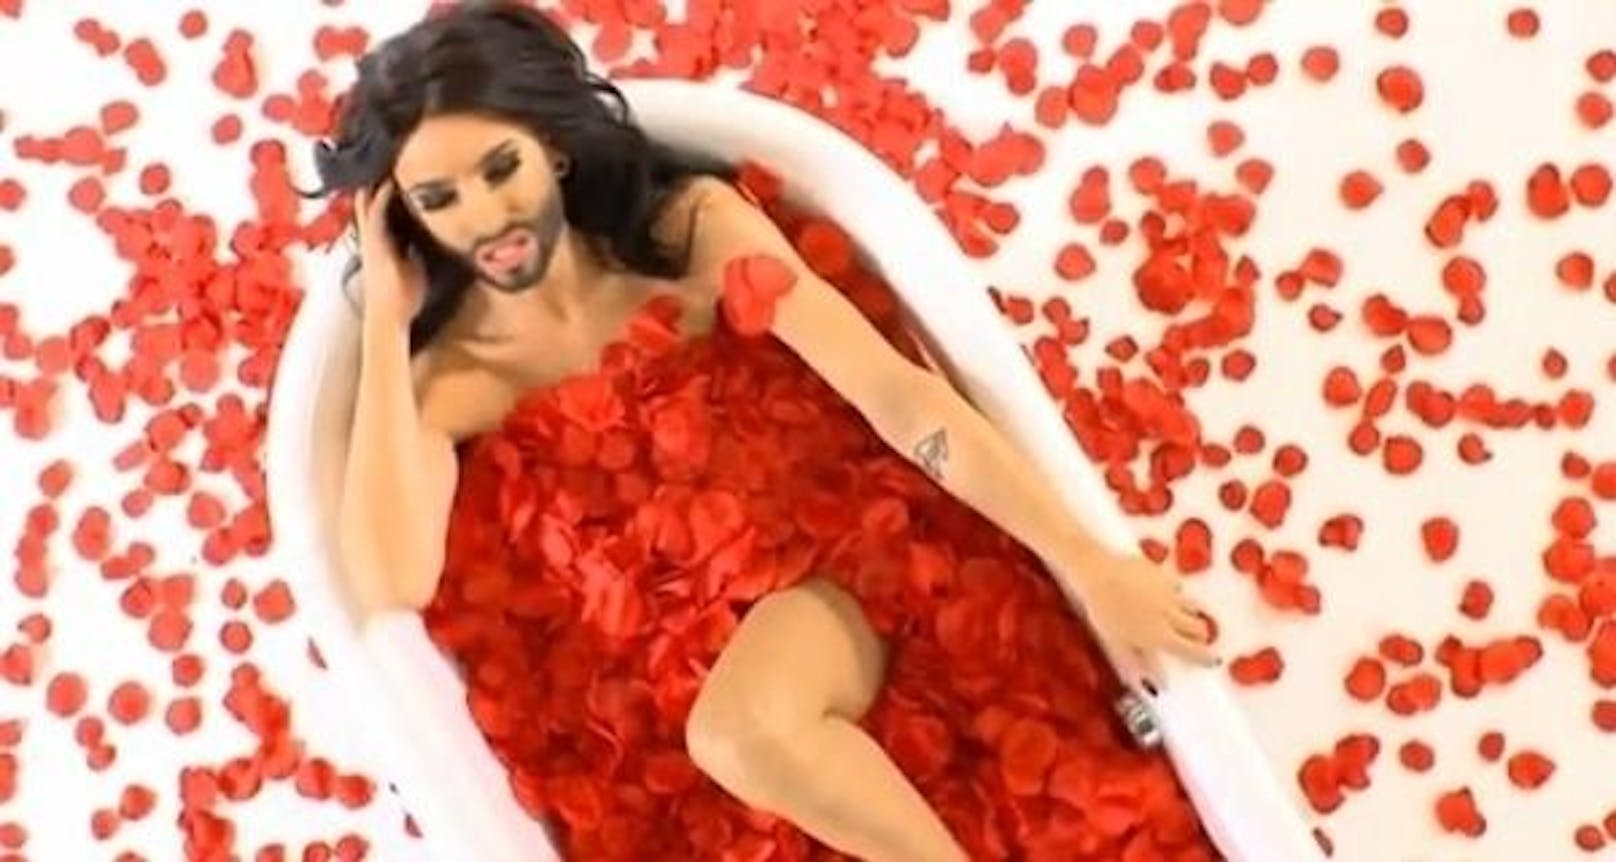 Sexy räkelt sich Conchita a la "American Beauty" für ein Musikvideo in der Wanne.